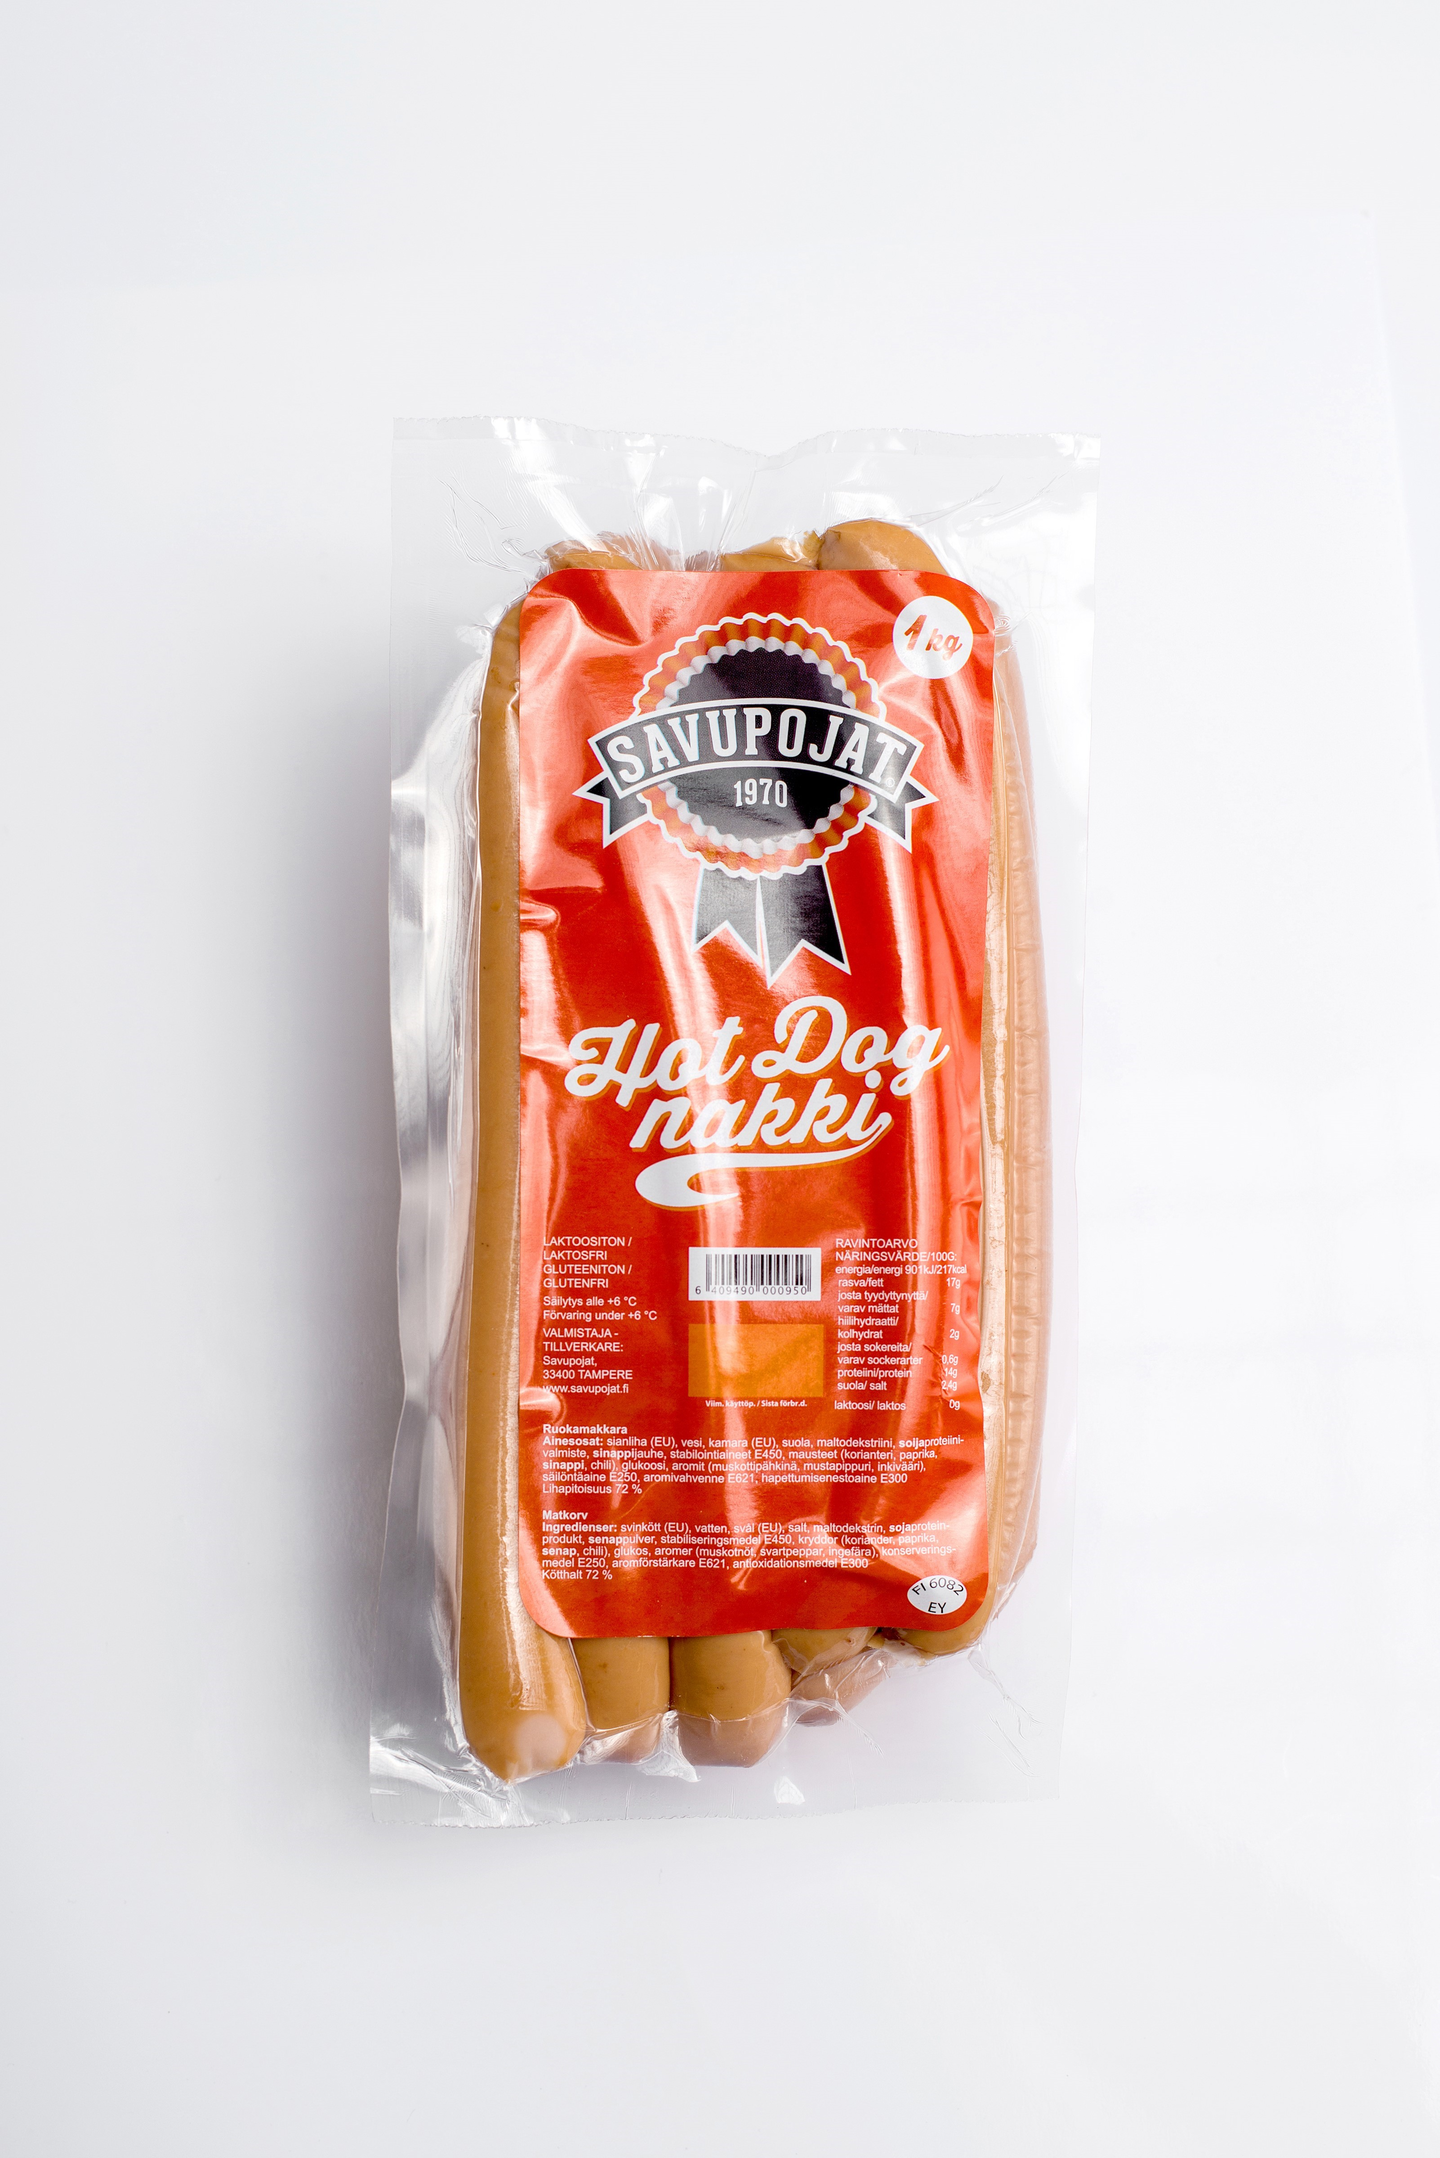 Tapola savupojat hot dog nakki 1kg